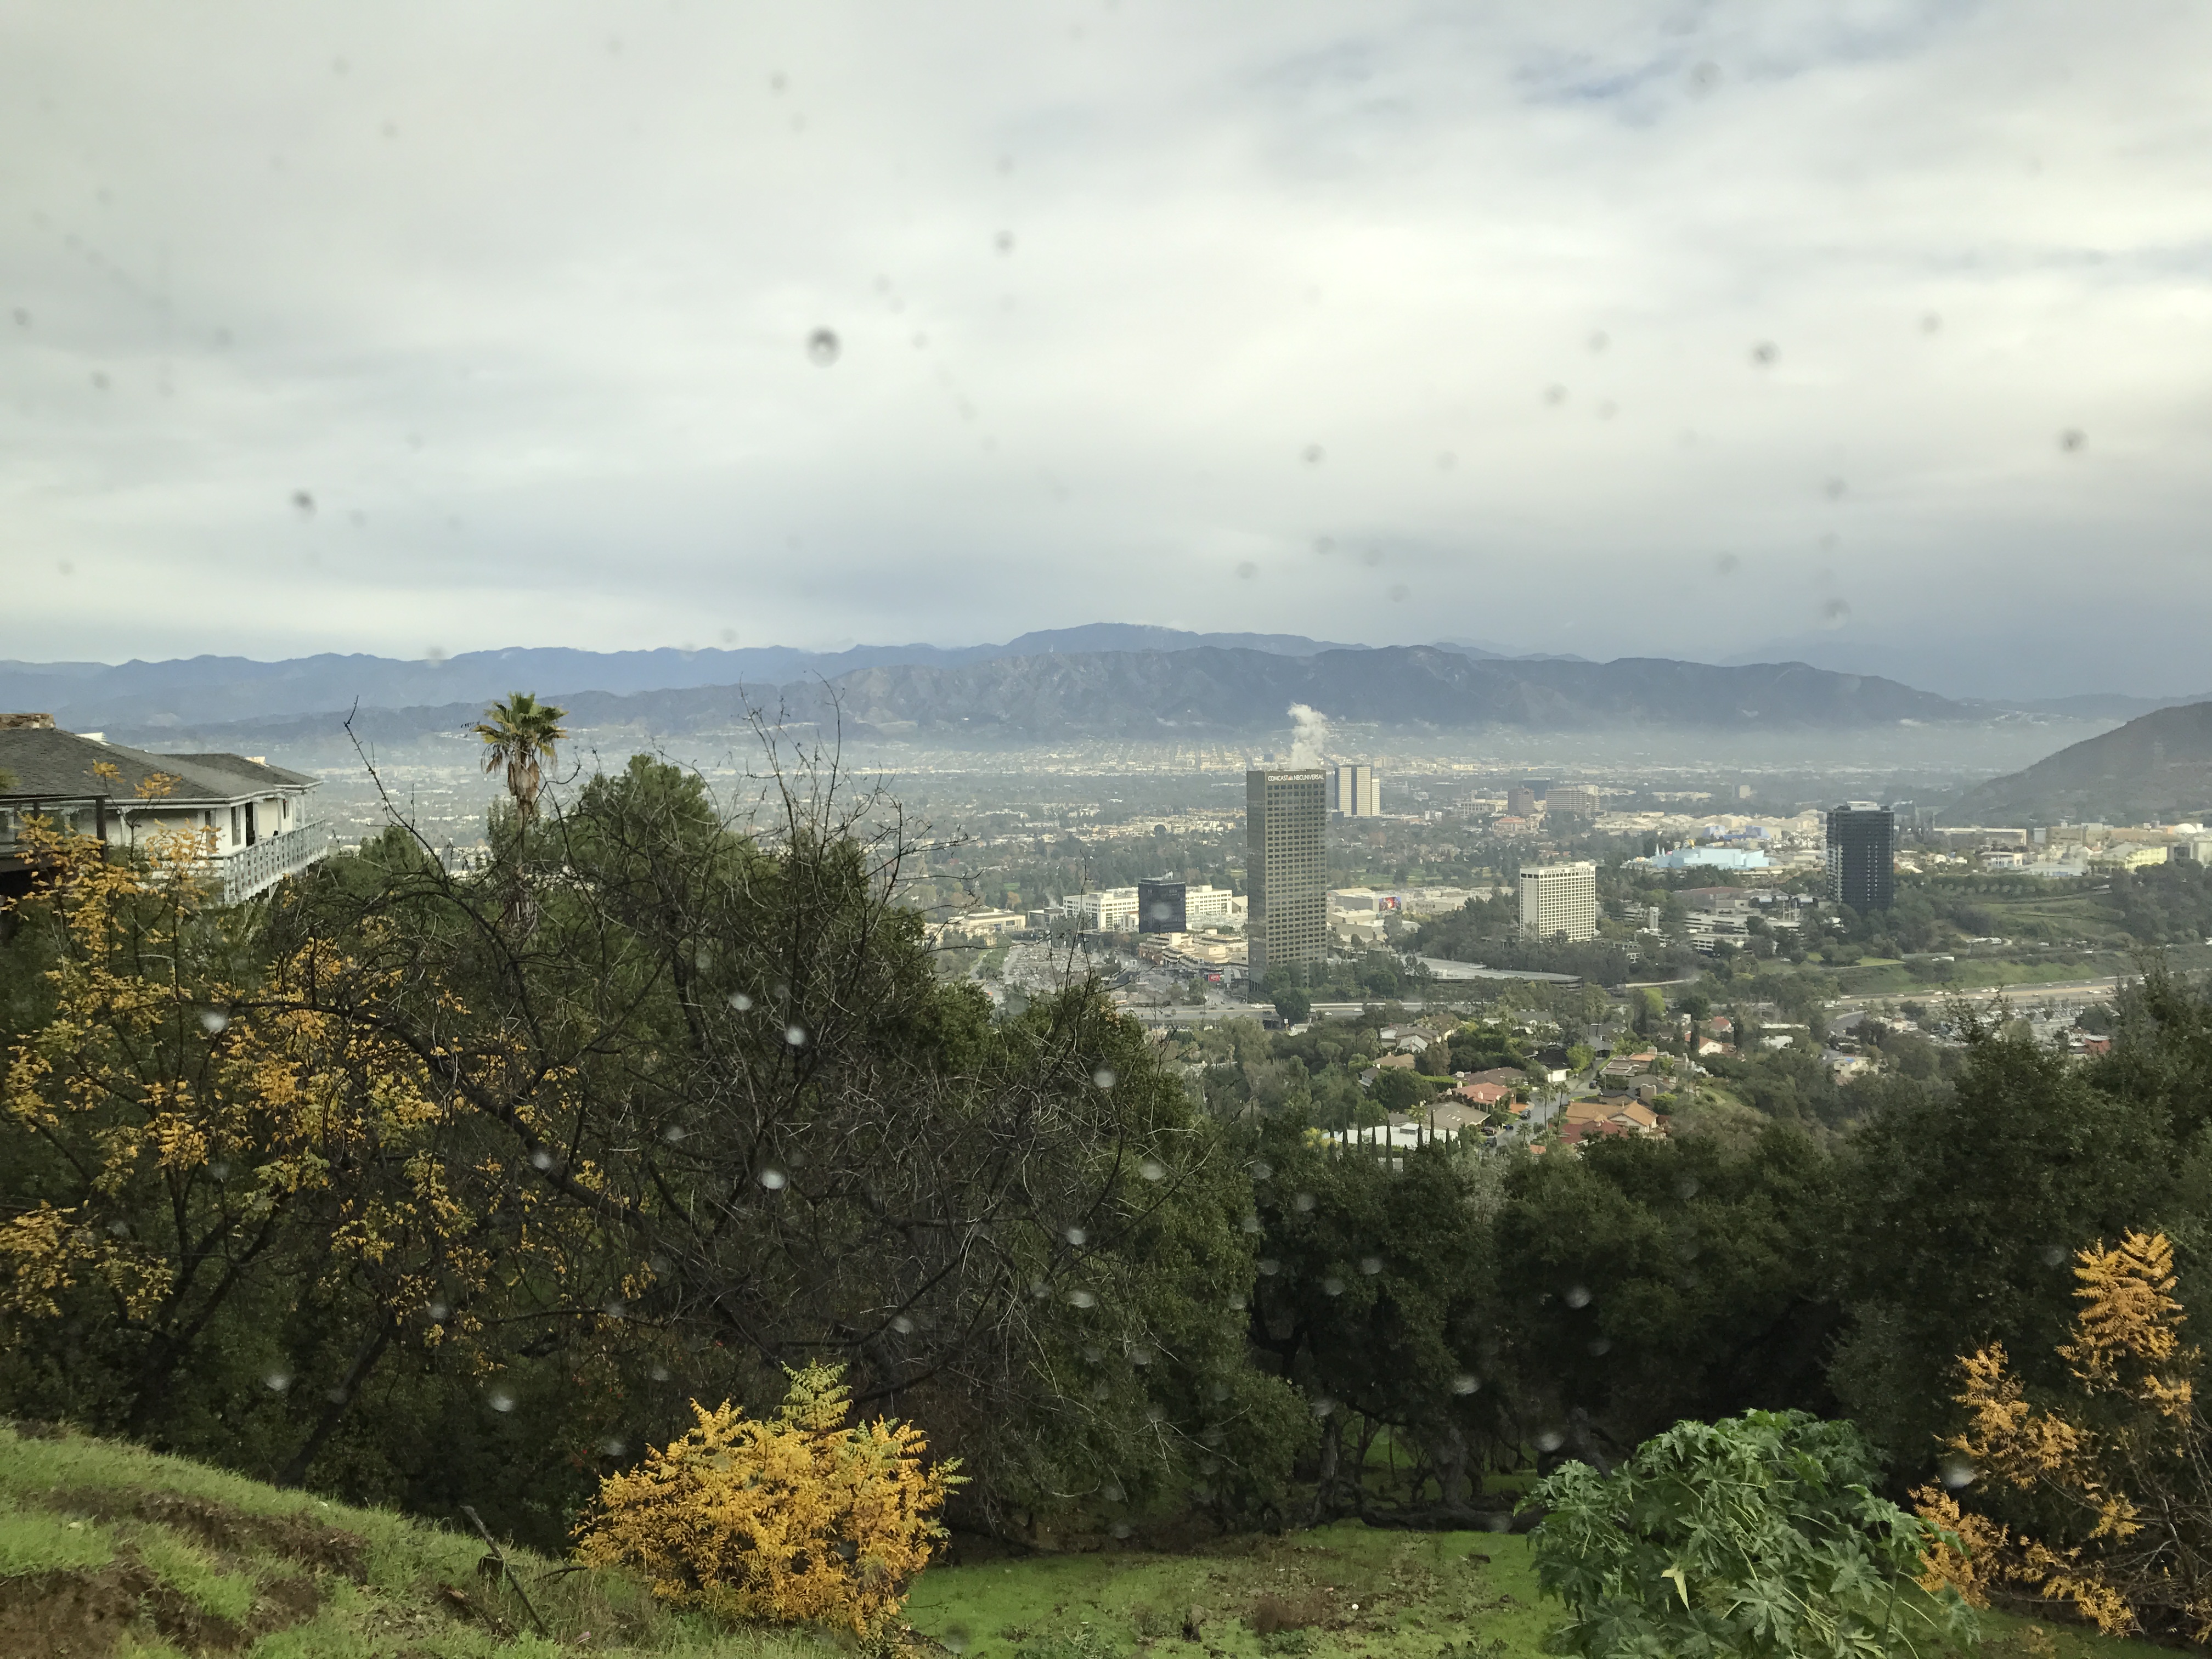 Los Angeles landscape, December 2016